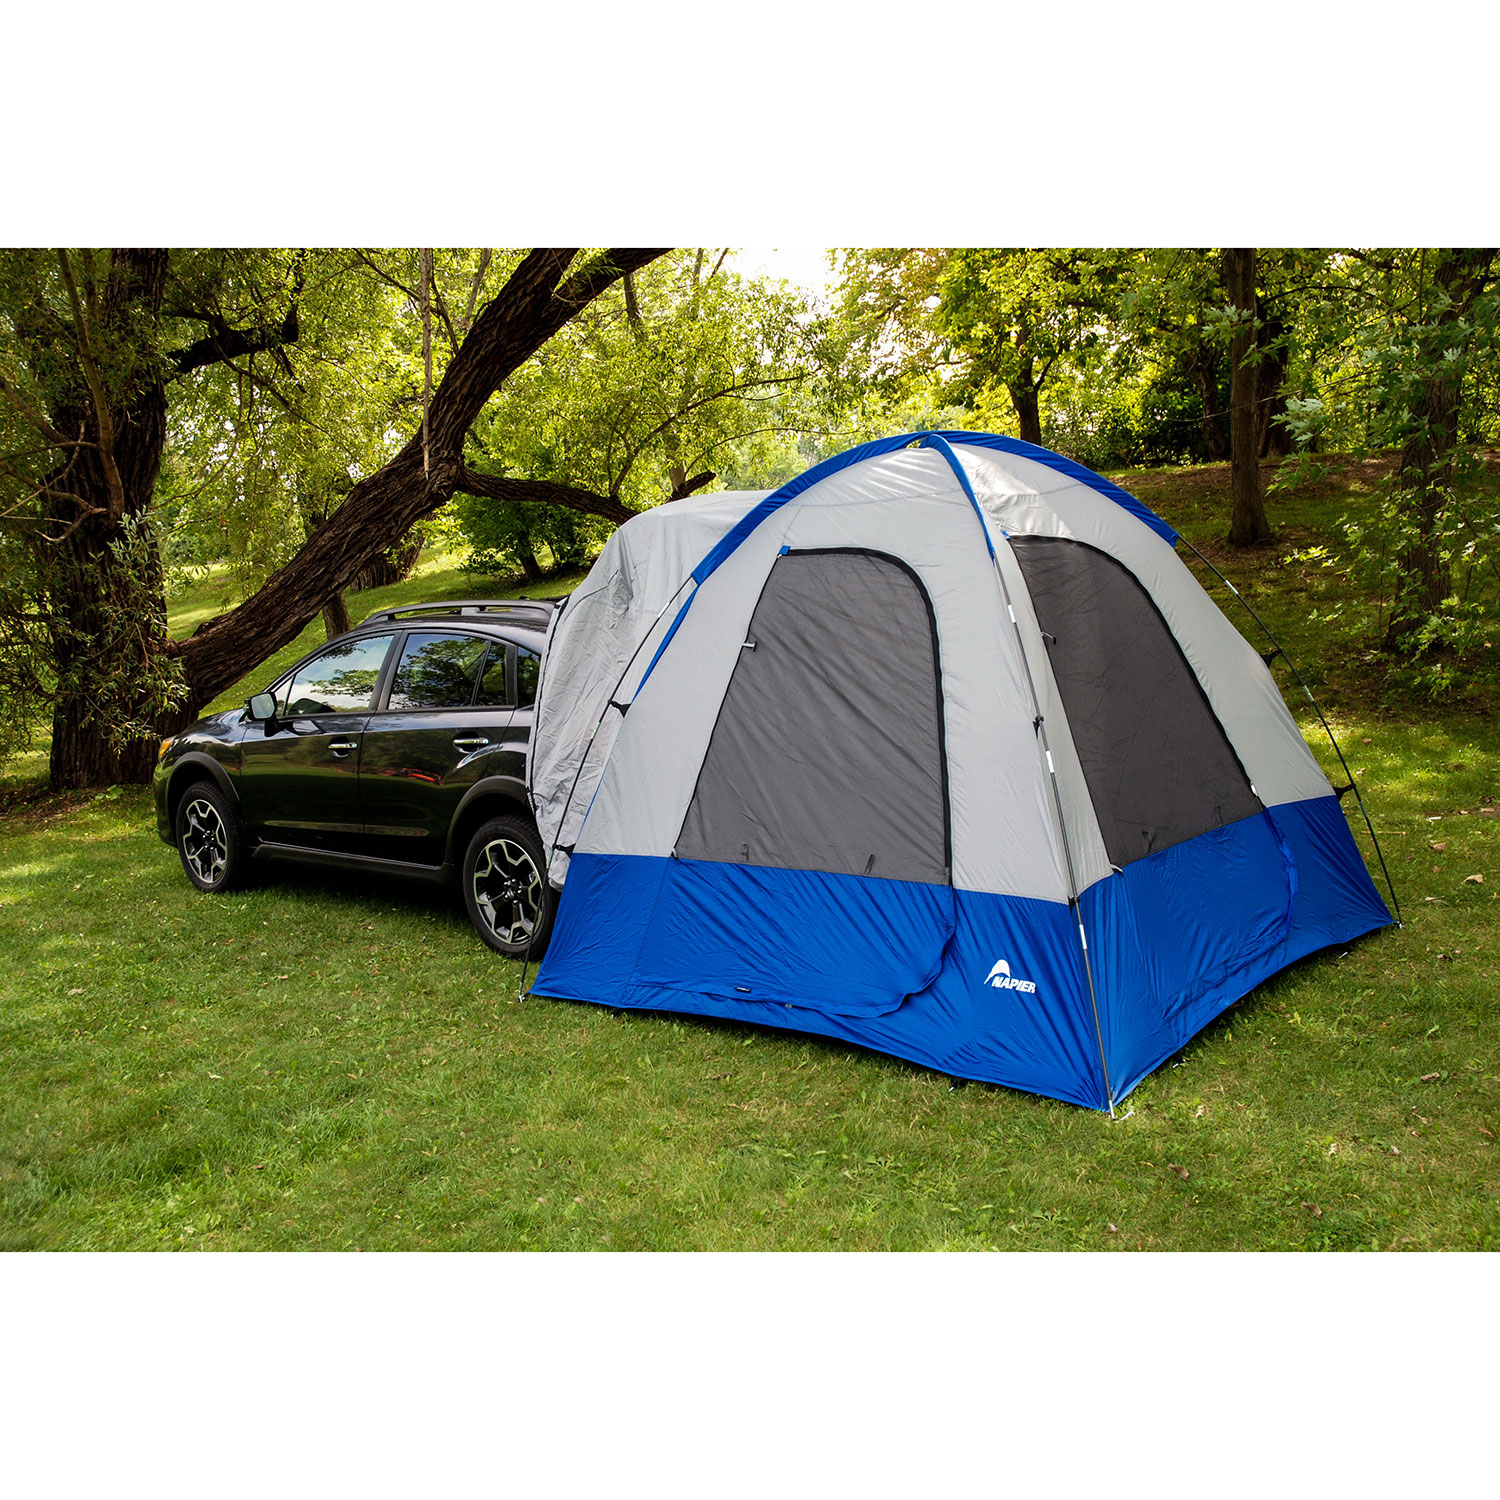 Tente pour véhicule à hayon Dome-To-Go Sportz de Napier - Bleu